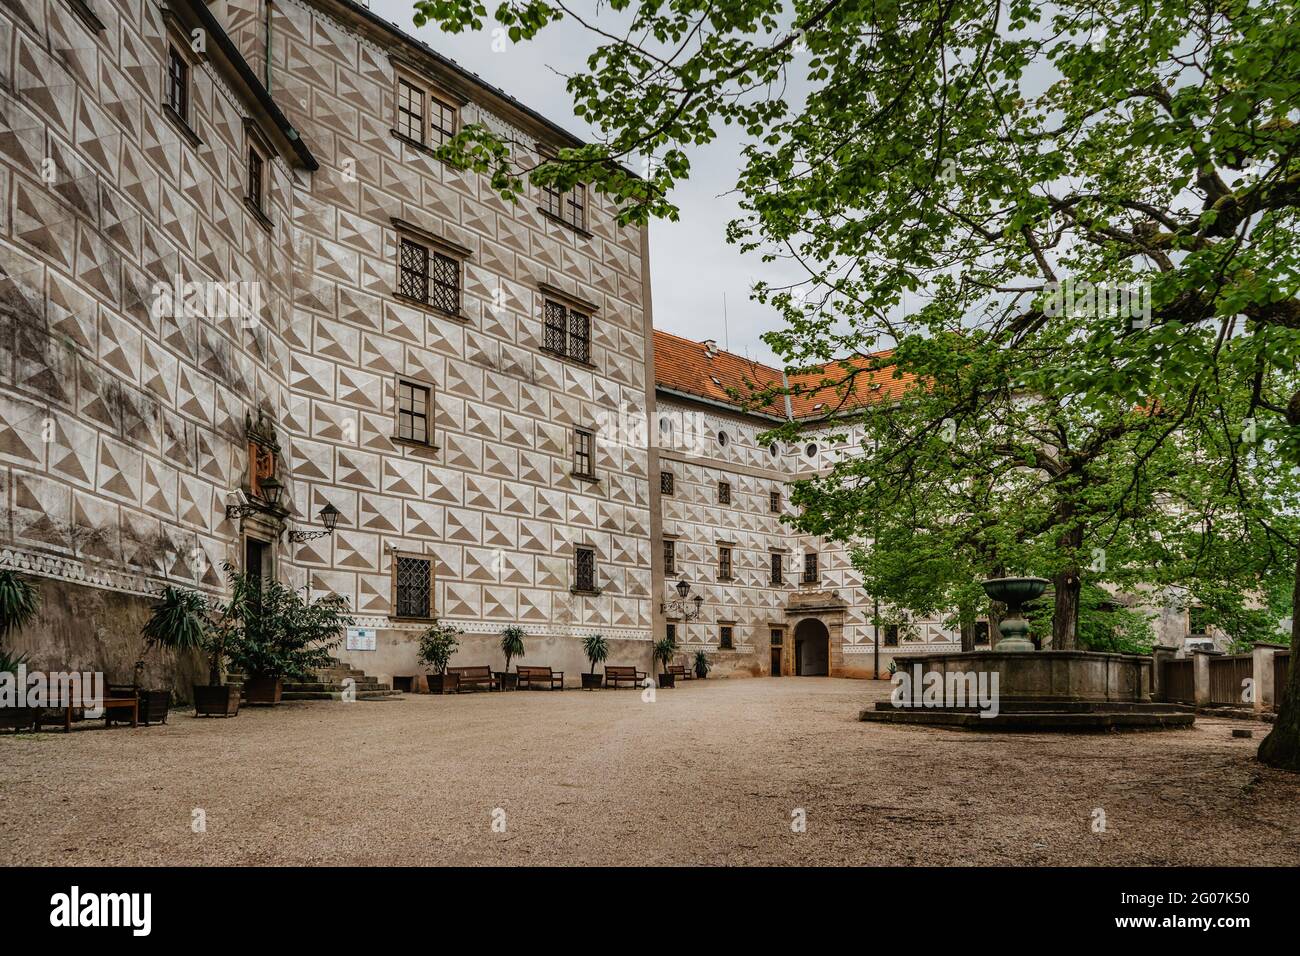 Nachod, Repubblica Ceca- Maggio 23,2021. Bellissimo castello con cinque cortili. Antico castello barocco e rinascimentale con torre di osservazione.Sgraffito Foto Stock